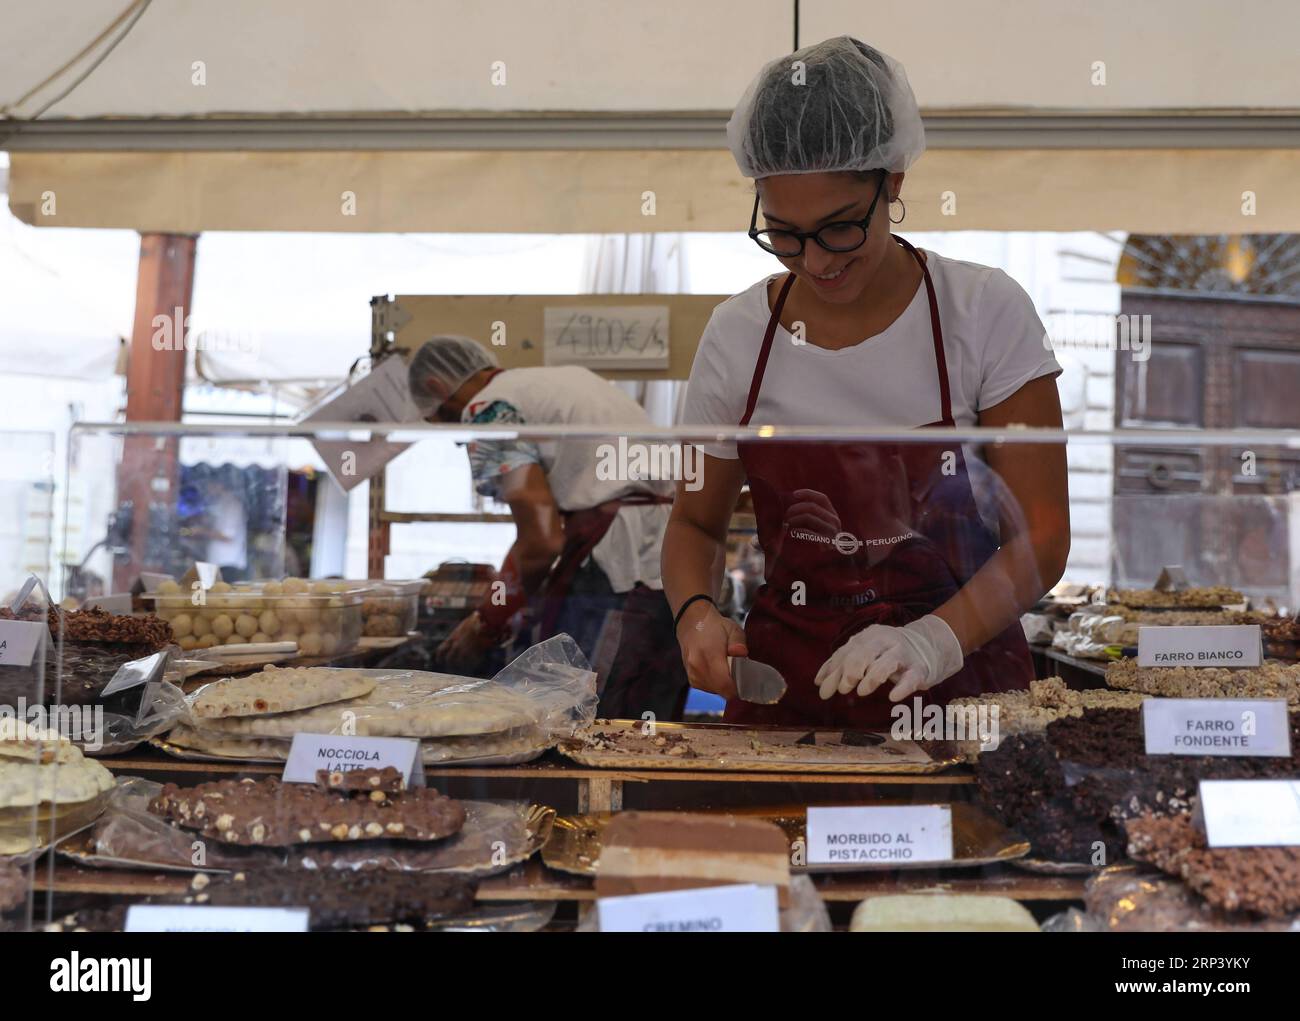 (181019) -- PÉROUSE (ITALIE), 19 octobre 2018 -- un travailleur coupe du chocolat lors du 25e Eurochocolate à Pérouse, Italie, le 19 octobre 2018. Le 25e festival international du chocolat Eurochocolate a débuté vendredi à Pérouse, une ville italienne avec une tradition de production de chocolat. Le festival annuel offrait une variété d'activités, y compris des expositions d'art de chocolat, des dégustations de chocolat, des spectacles de rue et des sculptures de chocolat.) ITALIE-PERUGIA-EUROCHOCOLATE ChengxTingting PUBLICATIONxNOTxINxCHN Banque D'Images